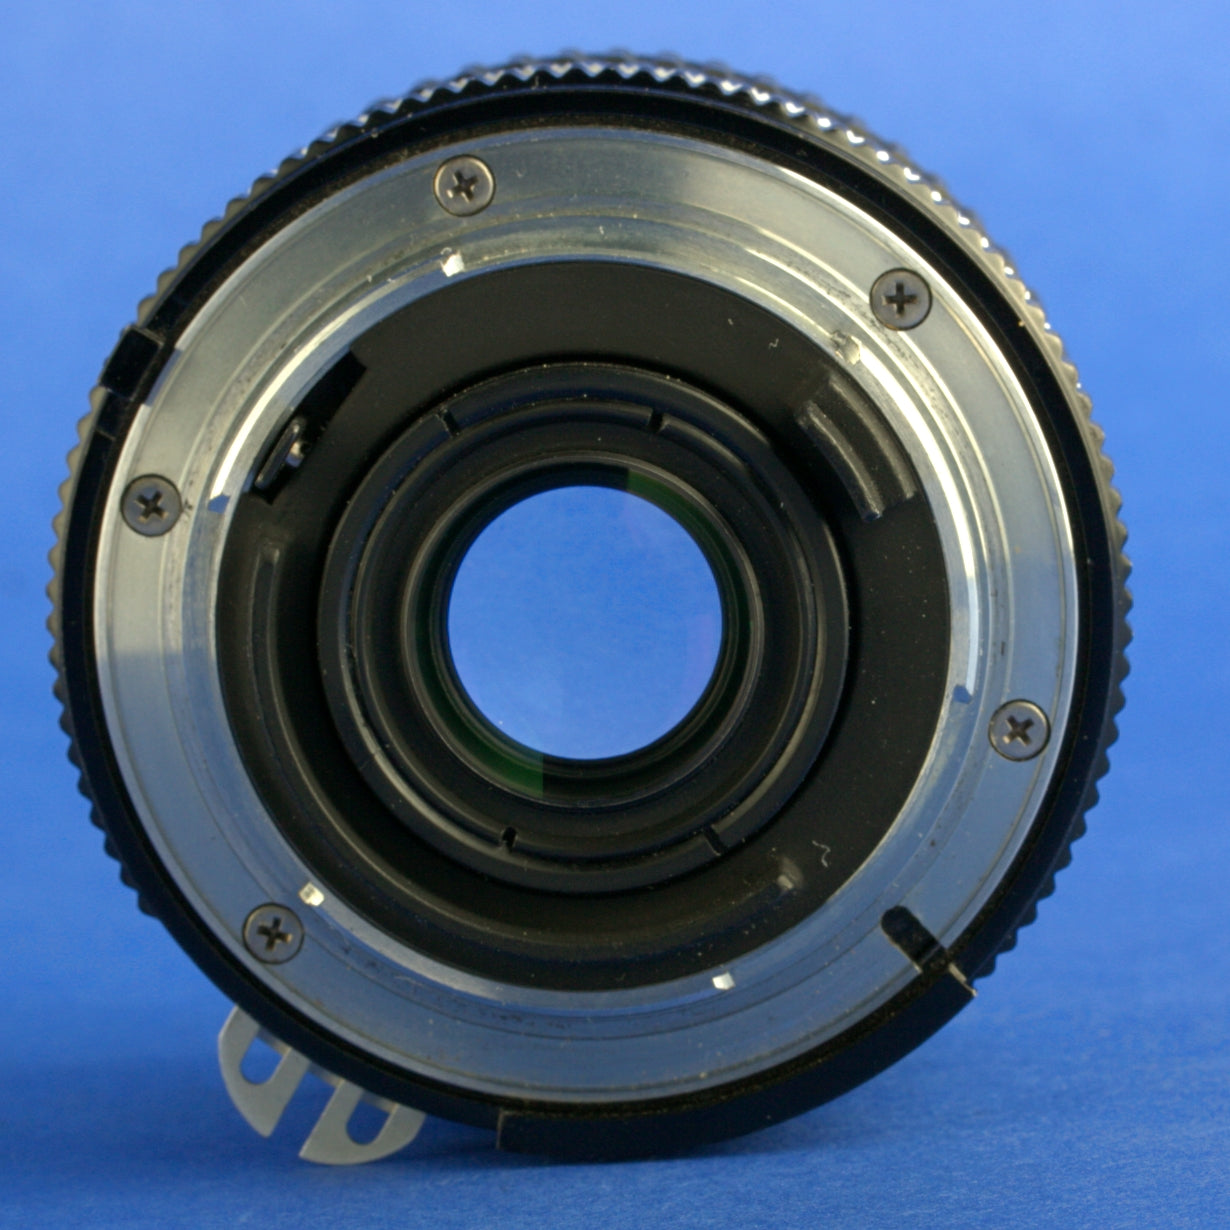 Nikon Nikkor 28mm 2.8 Ai Lens Mint Condition